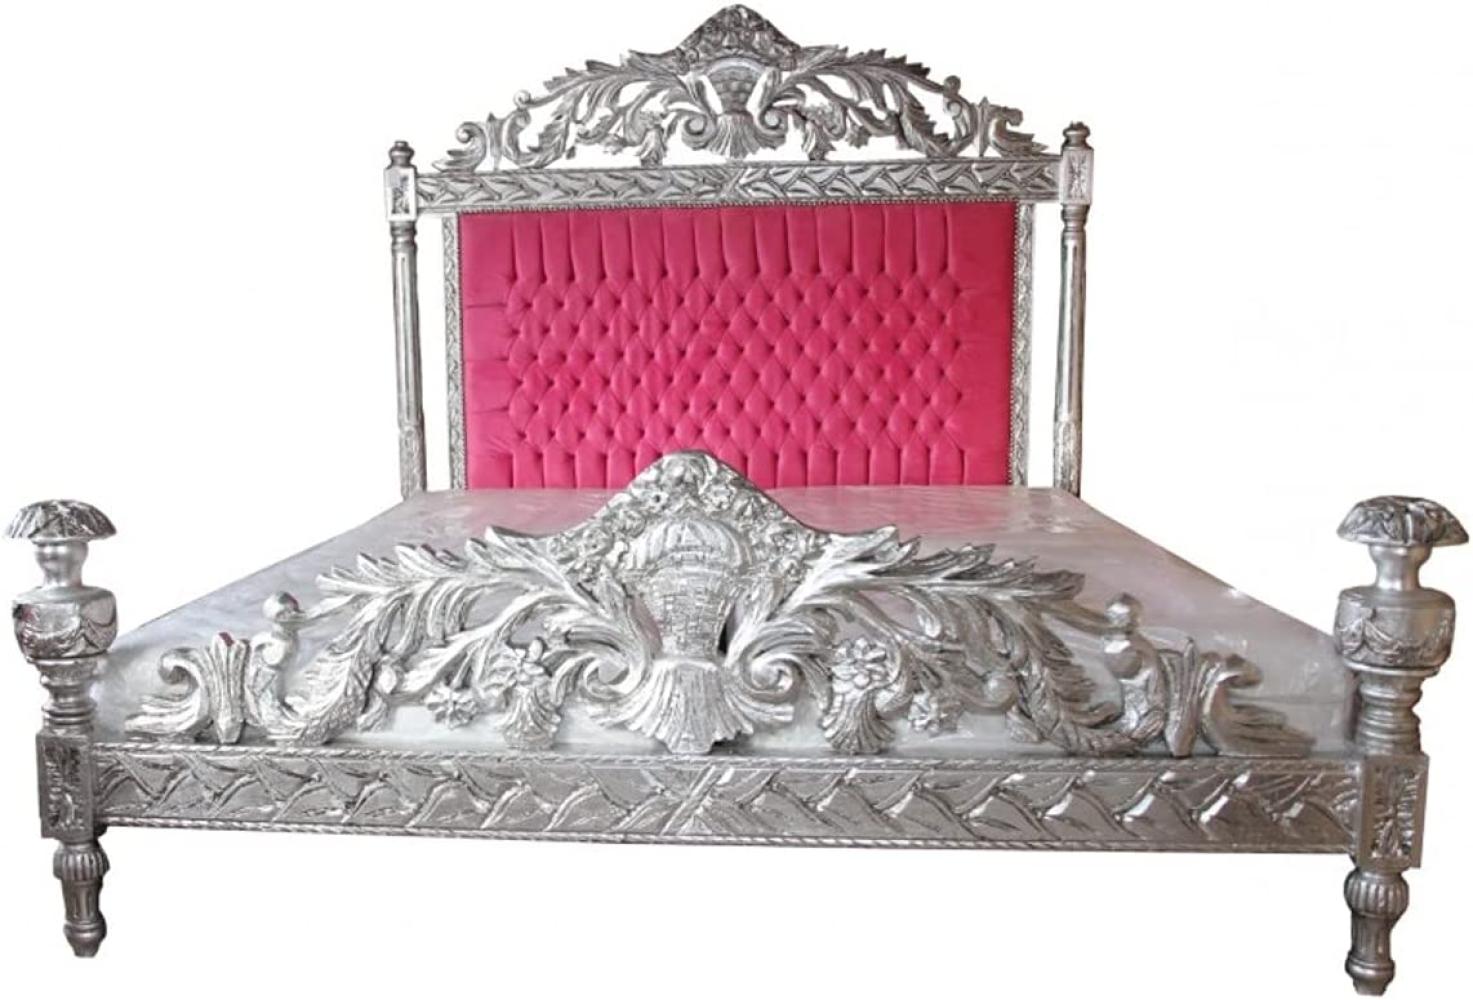 Casa Padrino Luxus Barock Bett Antik Rosa / Silber - Luxus Bett - Antik Look Bild 1